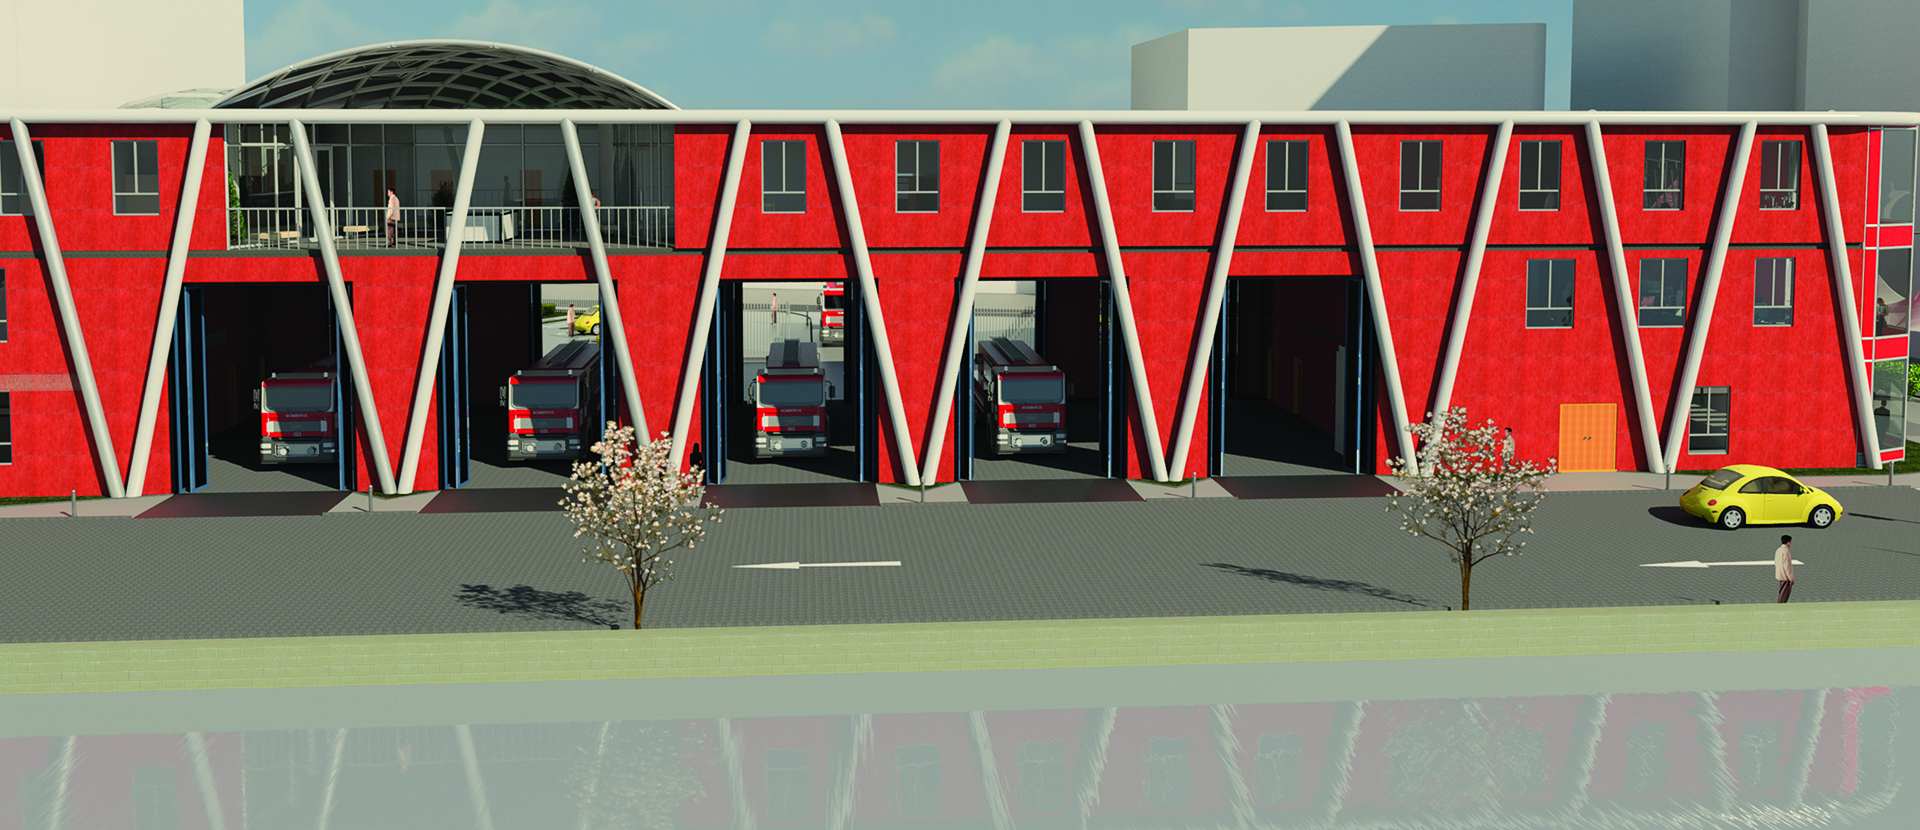 Olsjan Gjata's fire station design